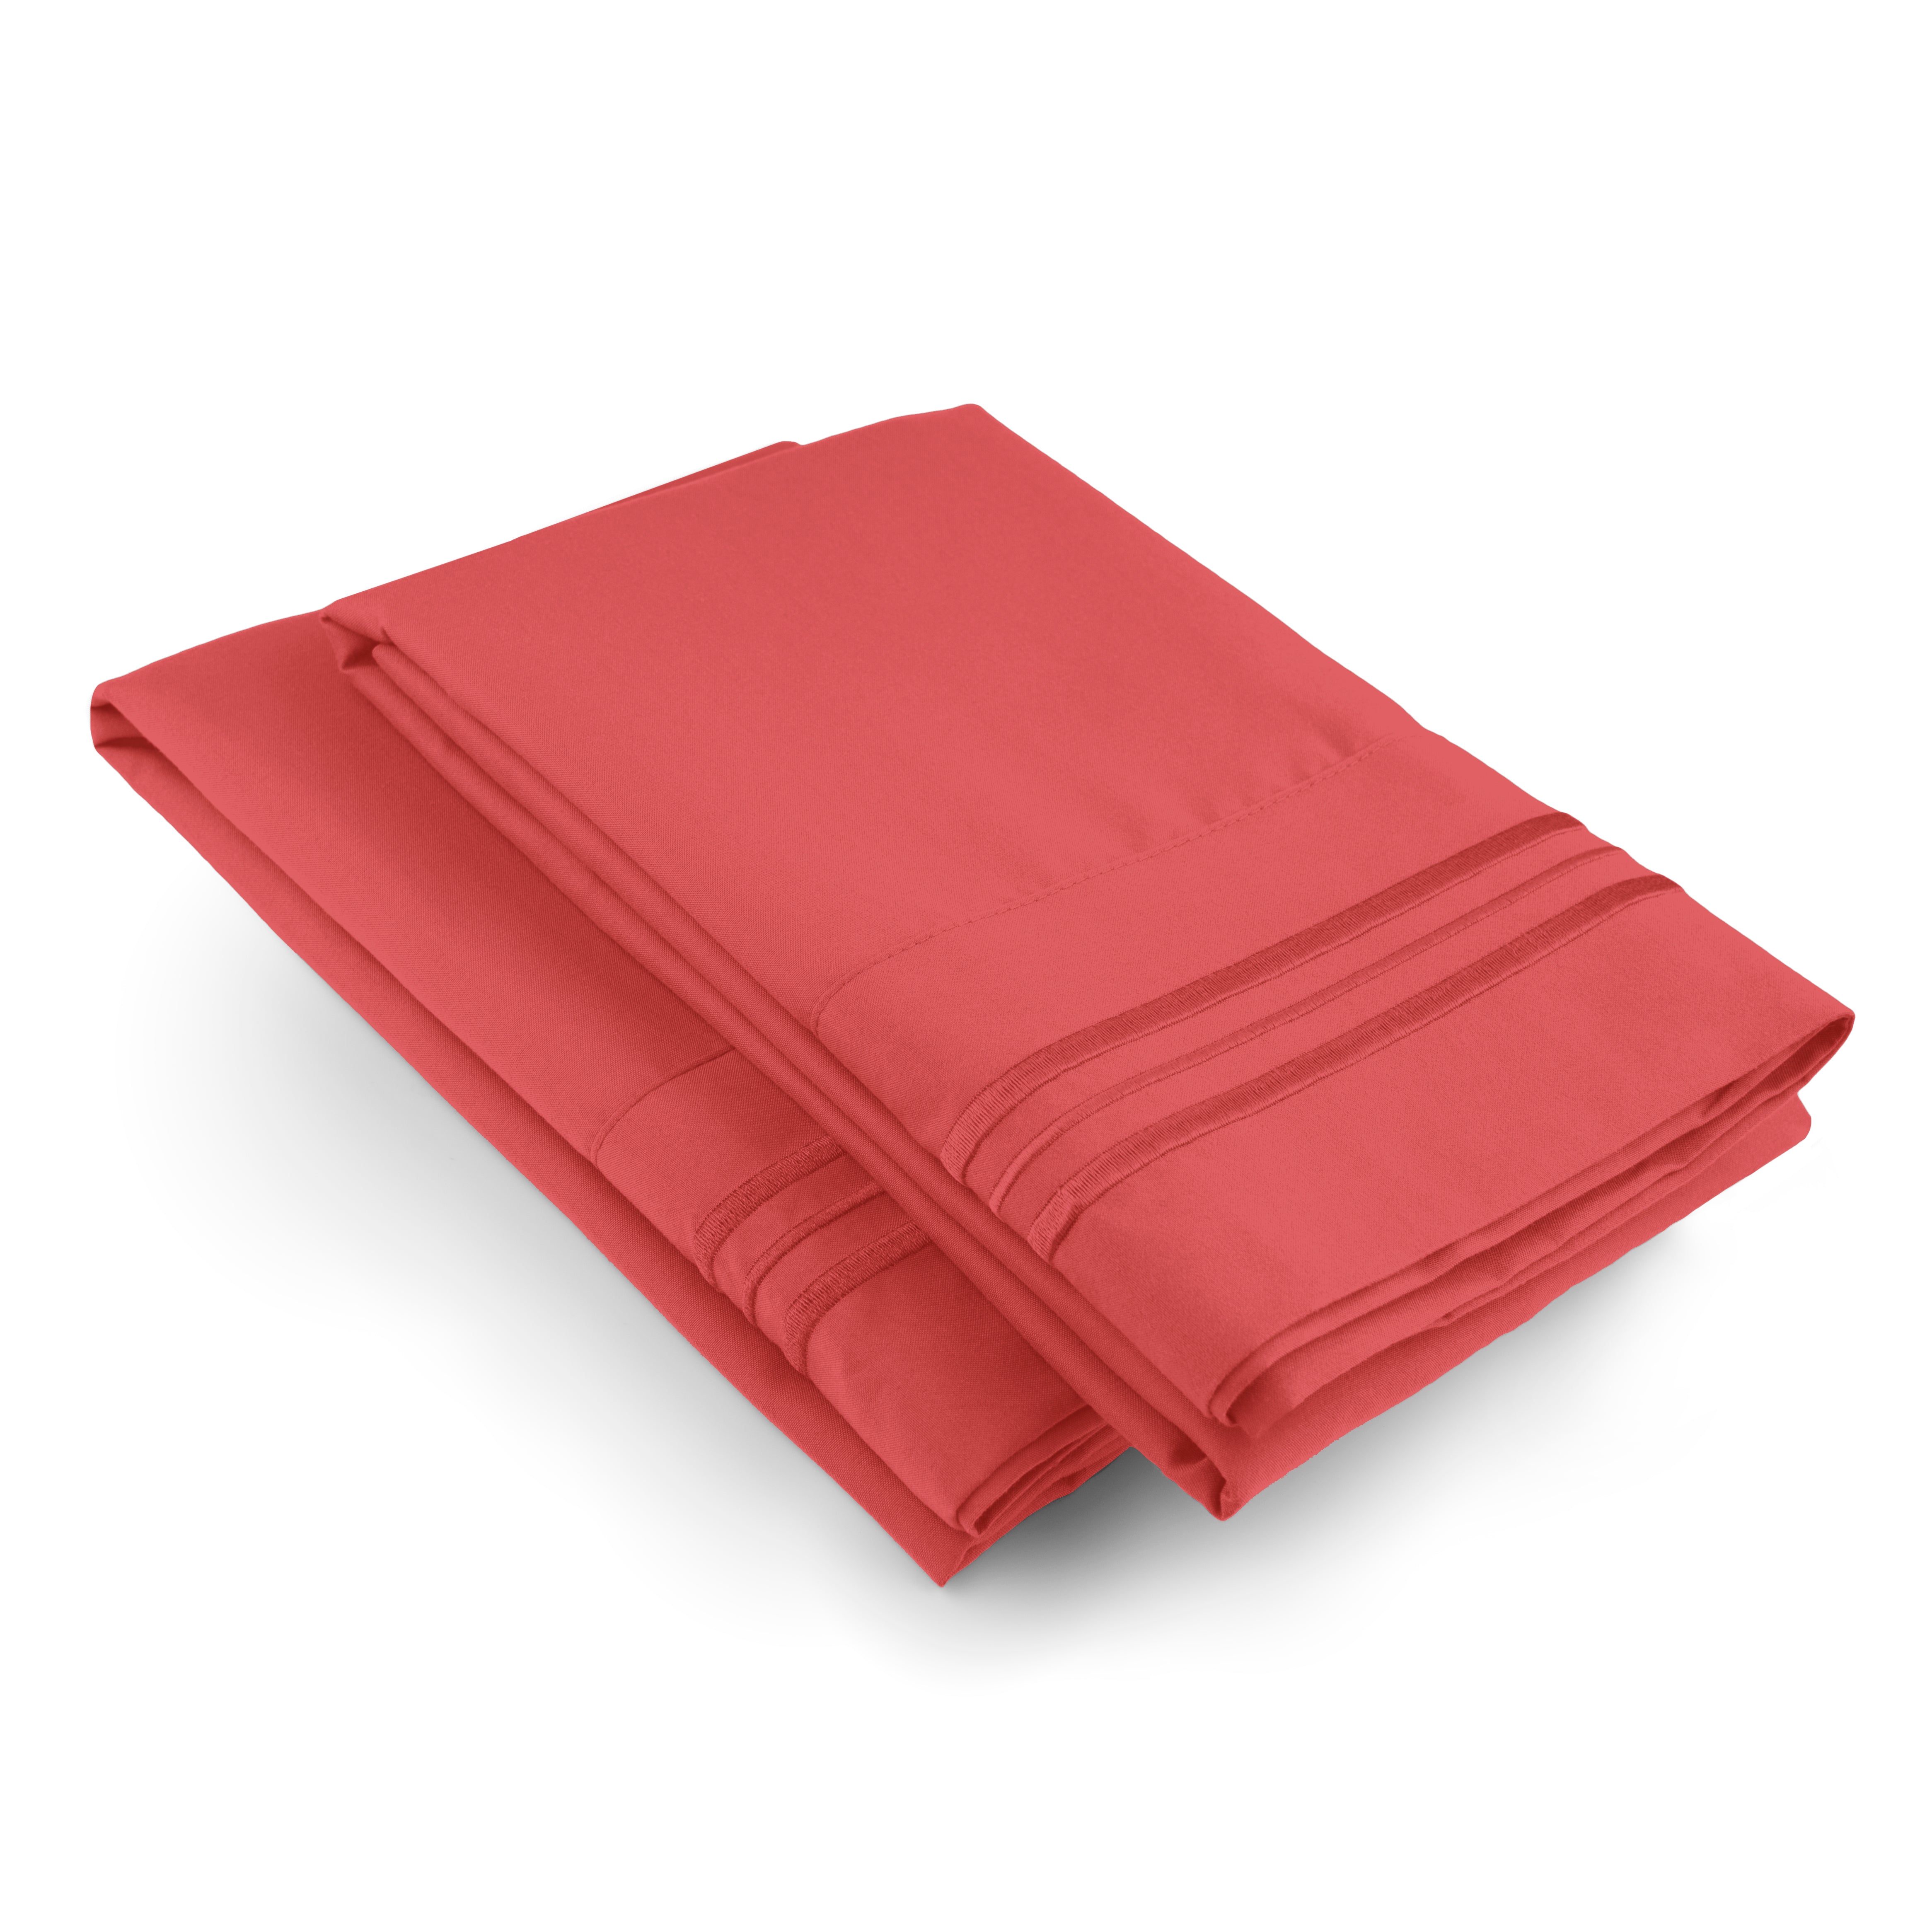 tes 2 Pillowcase Set - Red